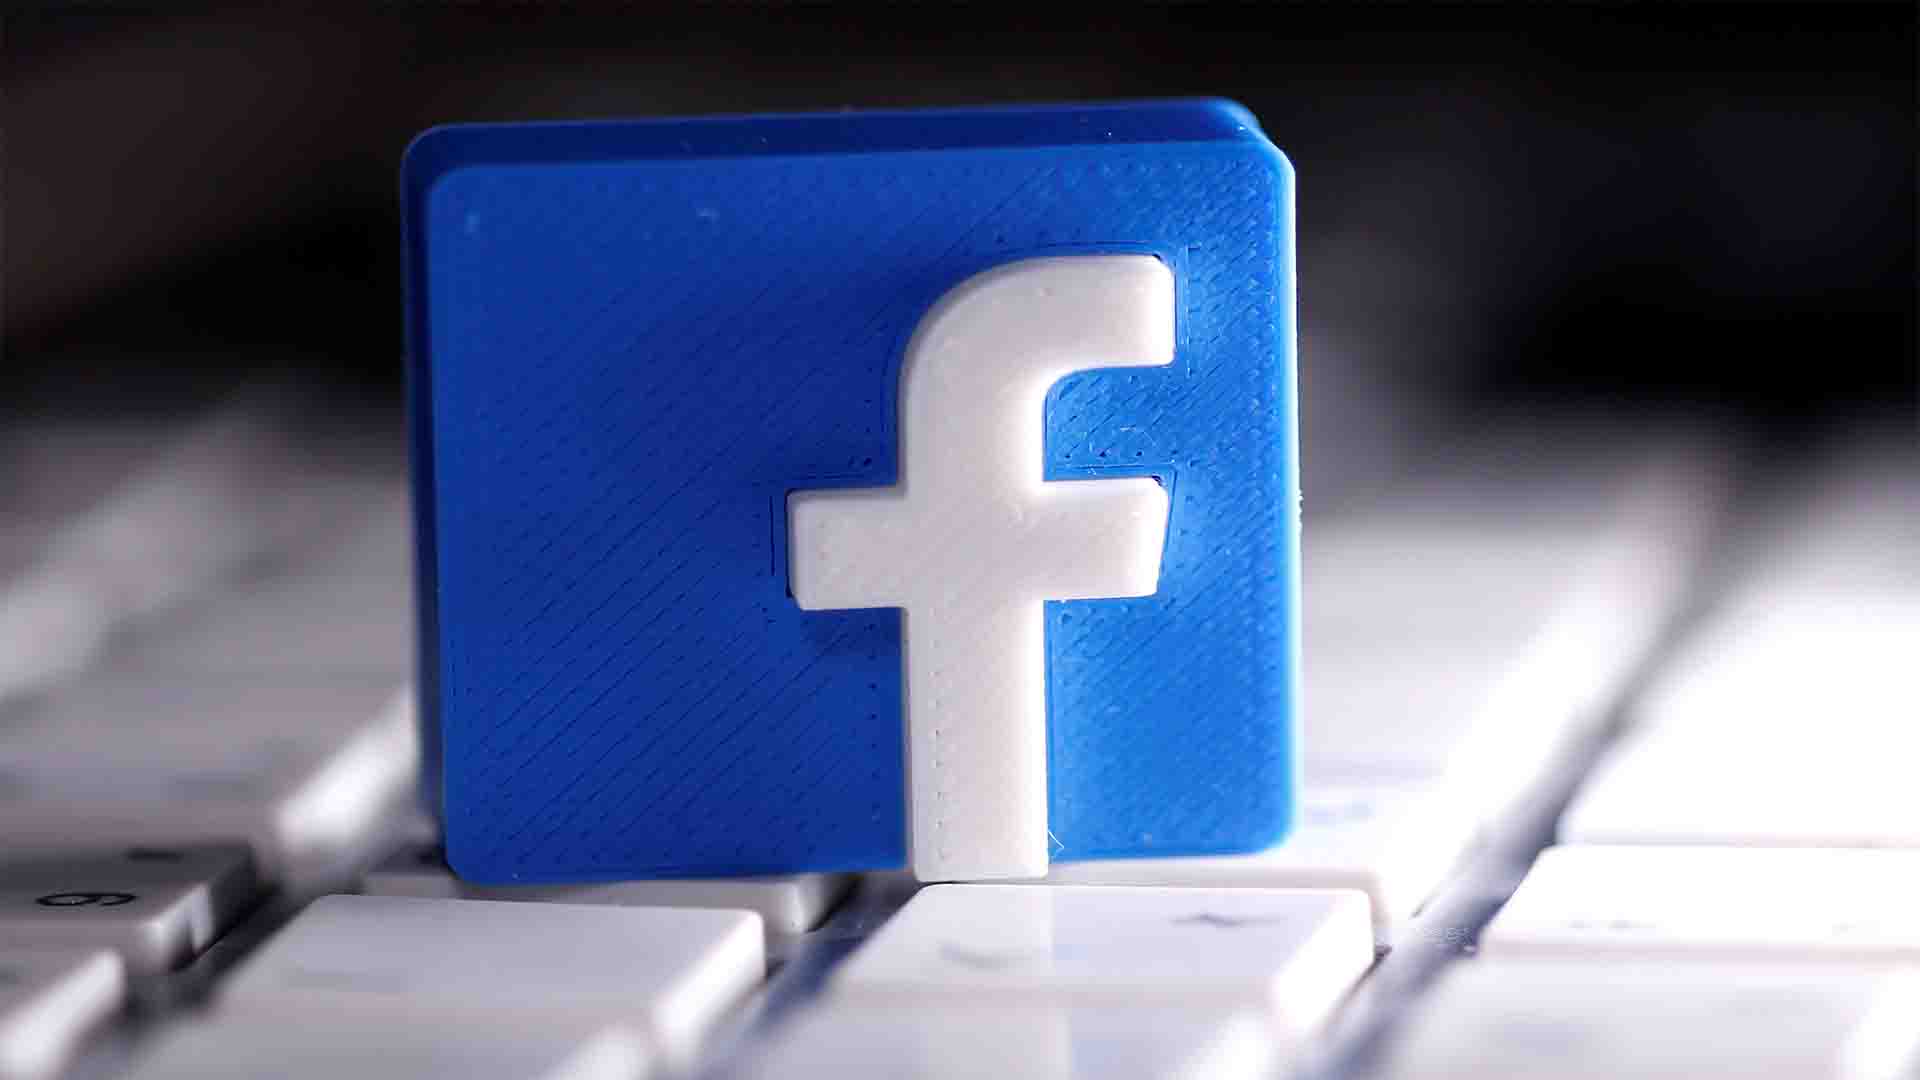 نصائح أمنية لحماية حسابك على فيس بوك و ميزة إنشاء الرموز